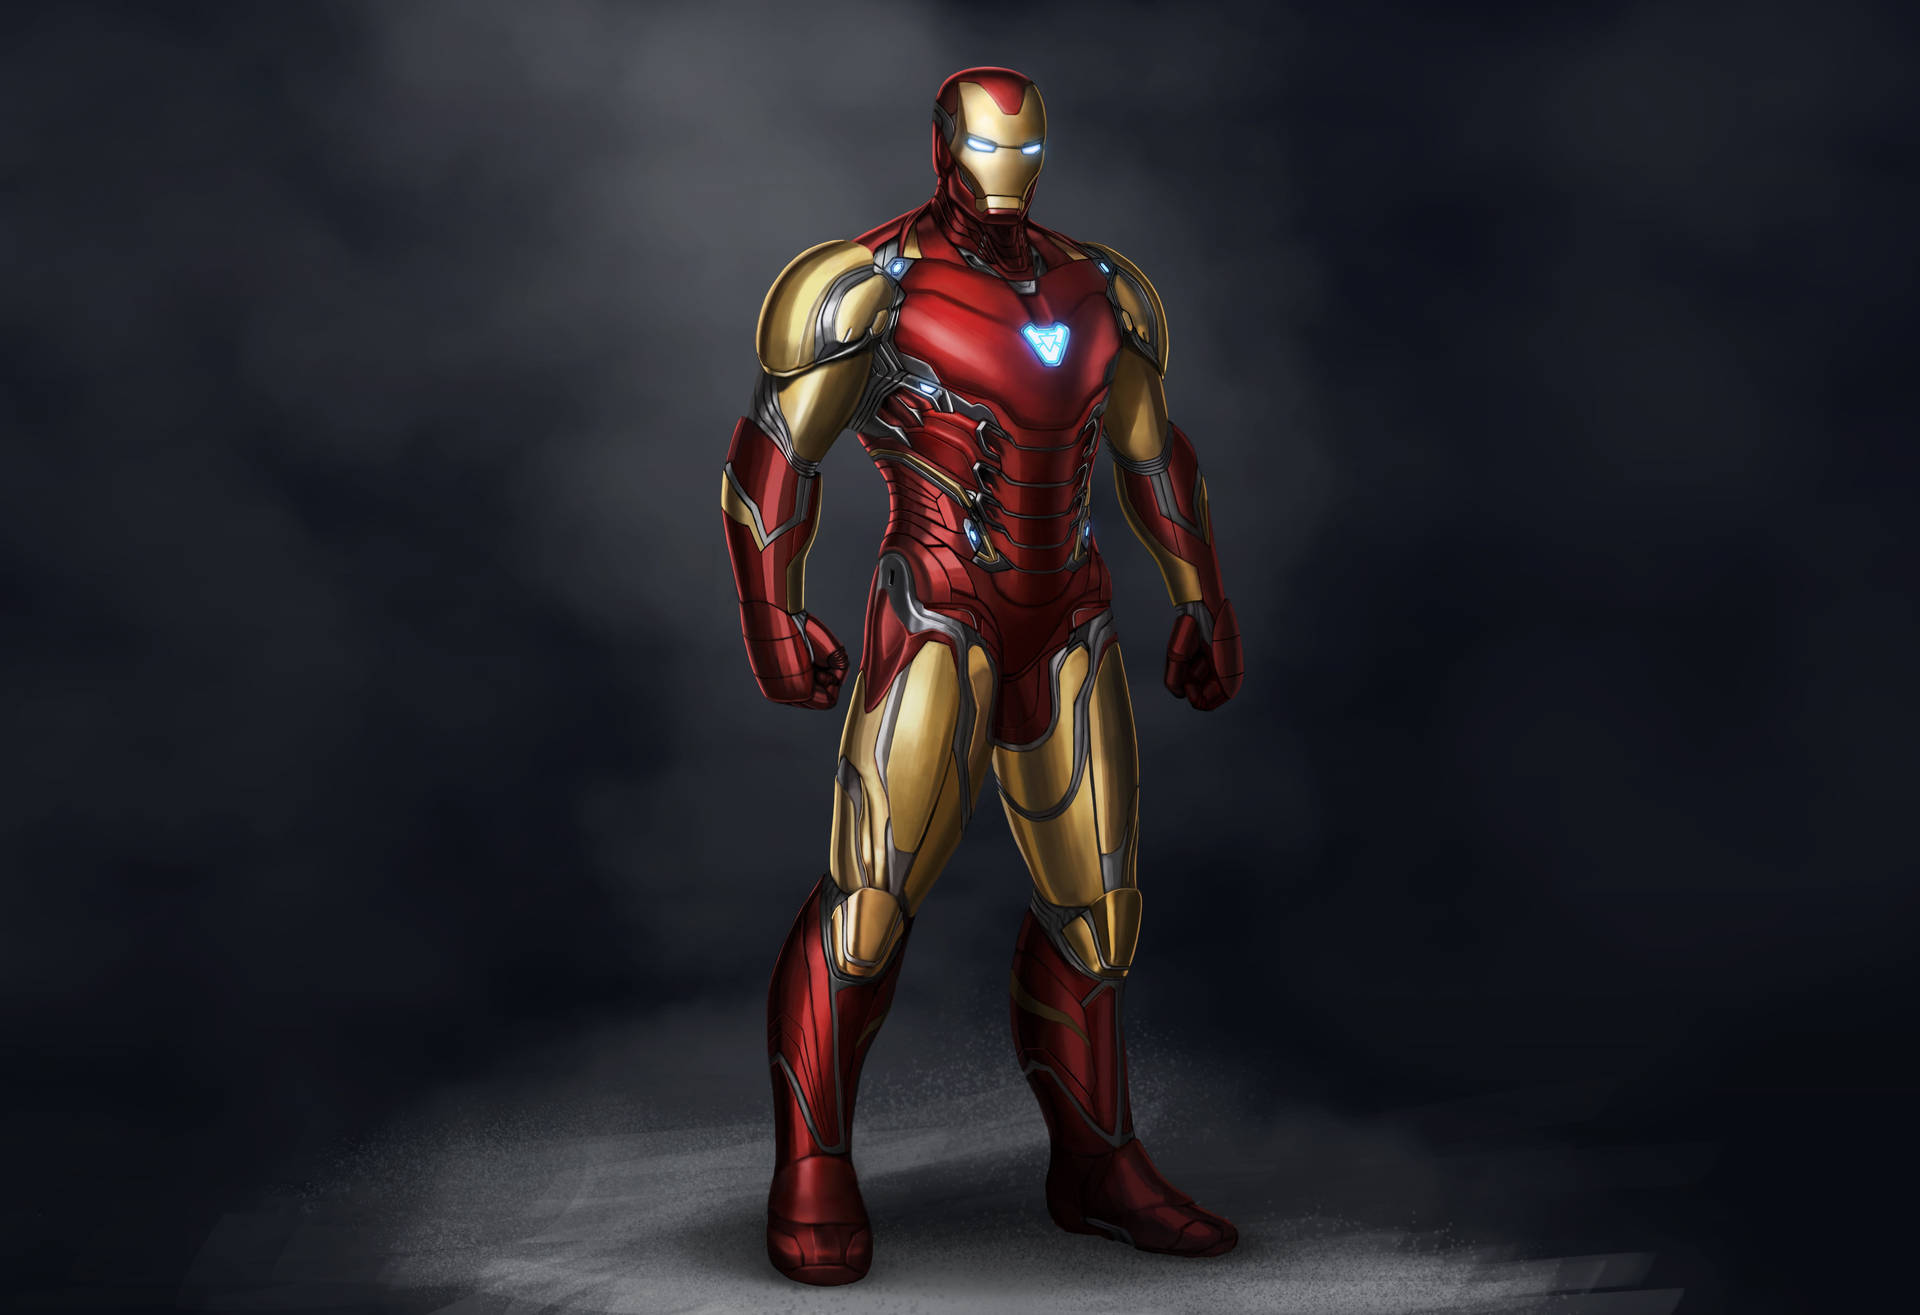 Free Iron Man Wallpaper Downloads, [500+] Iron Man Wallpapers for FREE |  